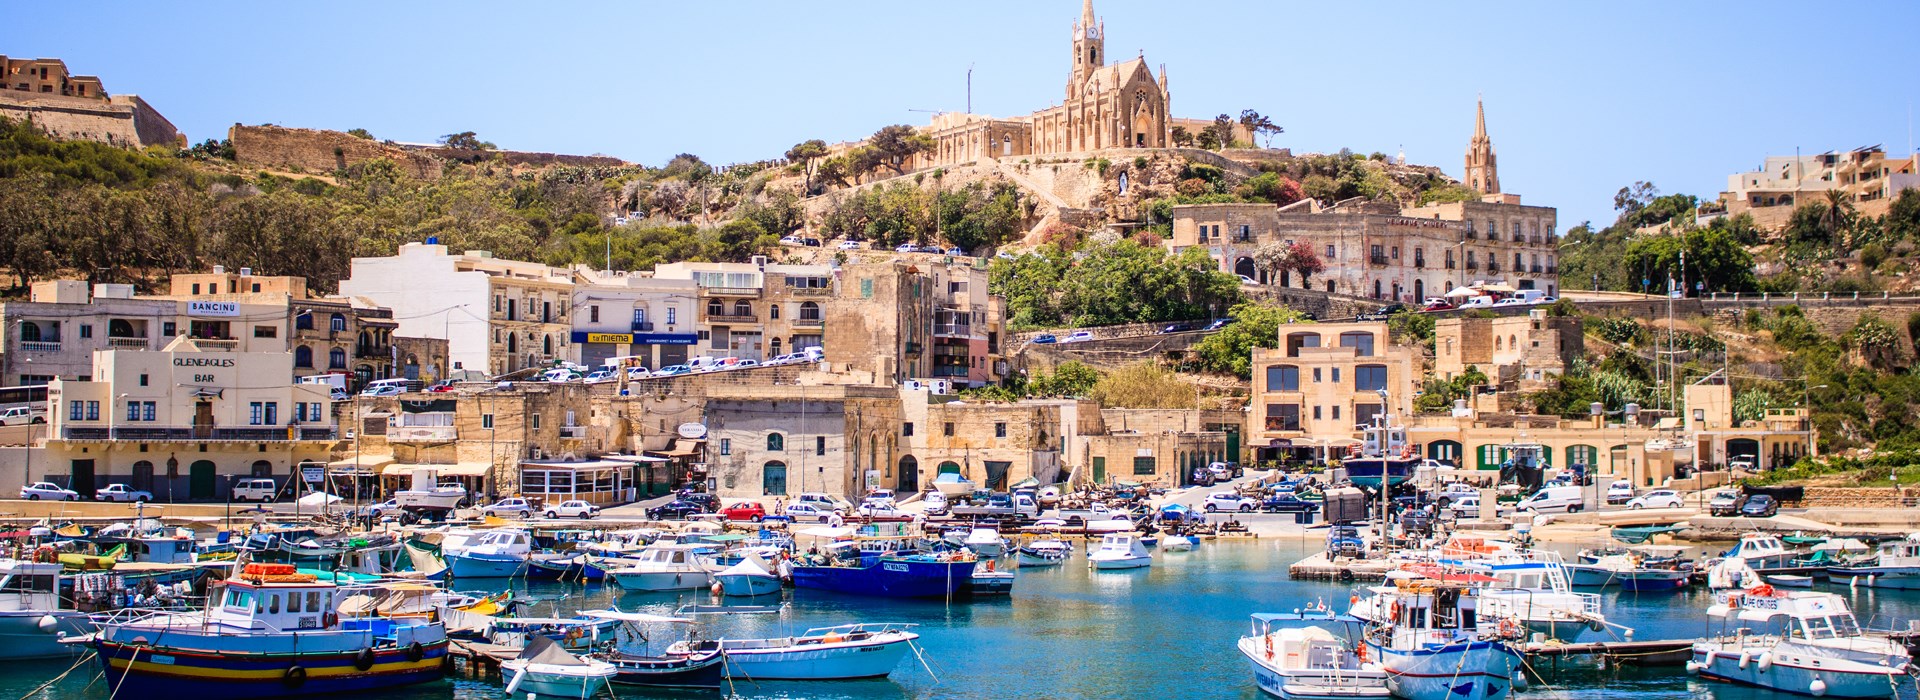 Carnet de voyage à Malte